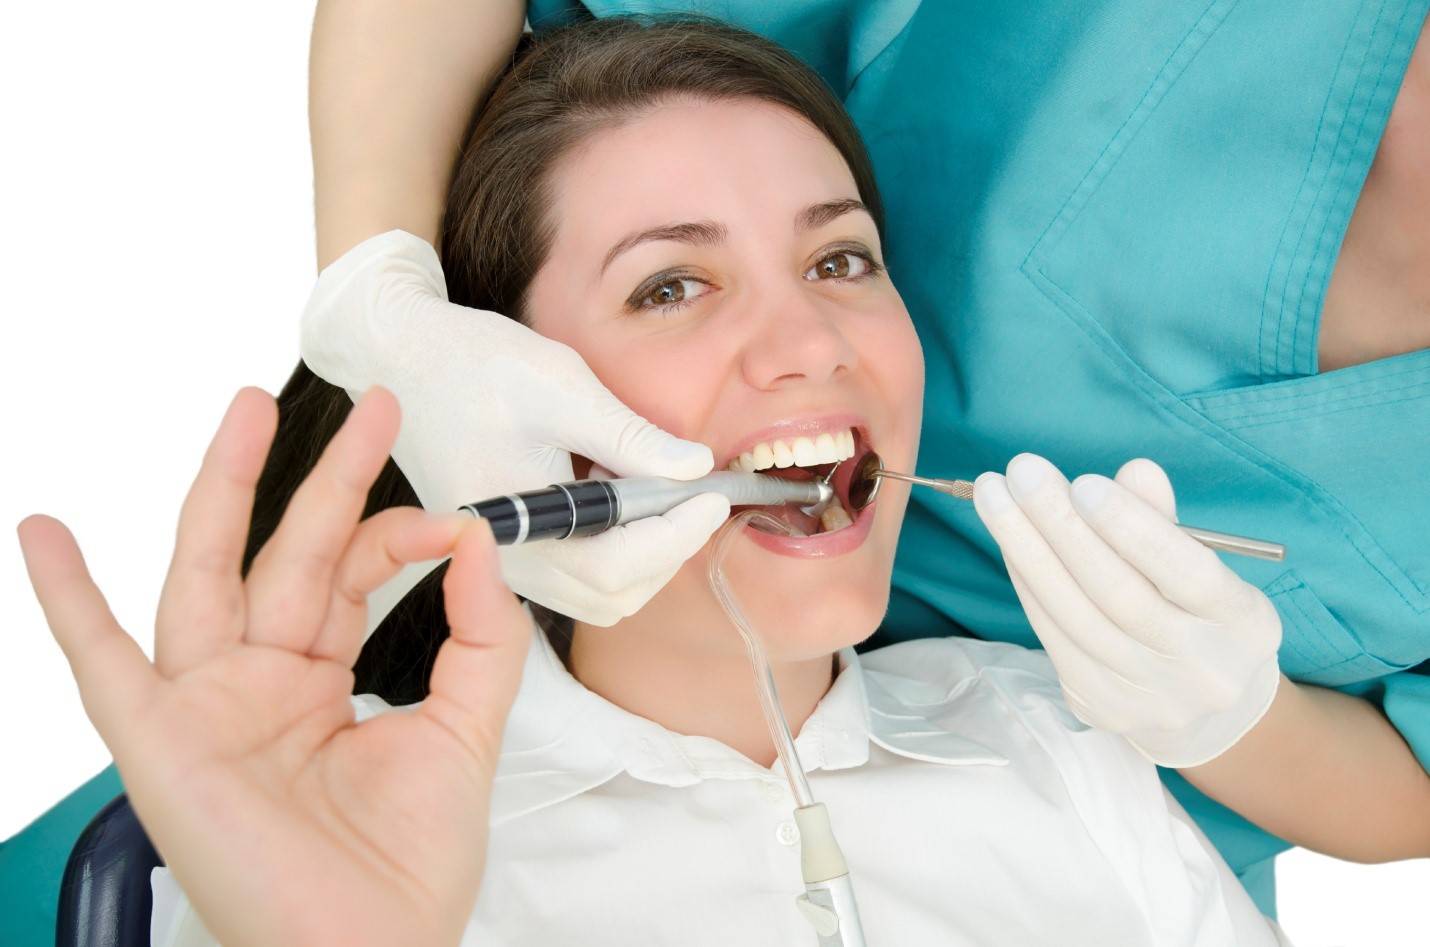 کنترل ترس از دندانپزشکی کاهش ترس کودکان از دندانپزشکی کاهش ترس از دندانپزشکی بردن بچه ها به دندانپزشکی X دندانپزشکی کنترل ترس از دندانپزشکی کاهش ترس کودکان از دندانپزشکی کاهش ترس از دندانپزشکی بردن بچه ها به دندانپزشکی X دندانپزشکی 